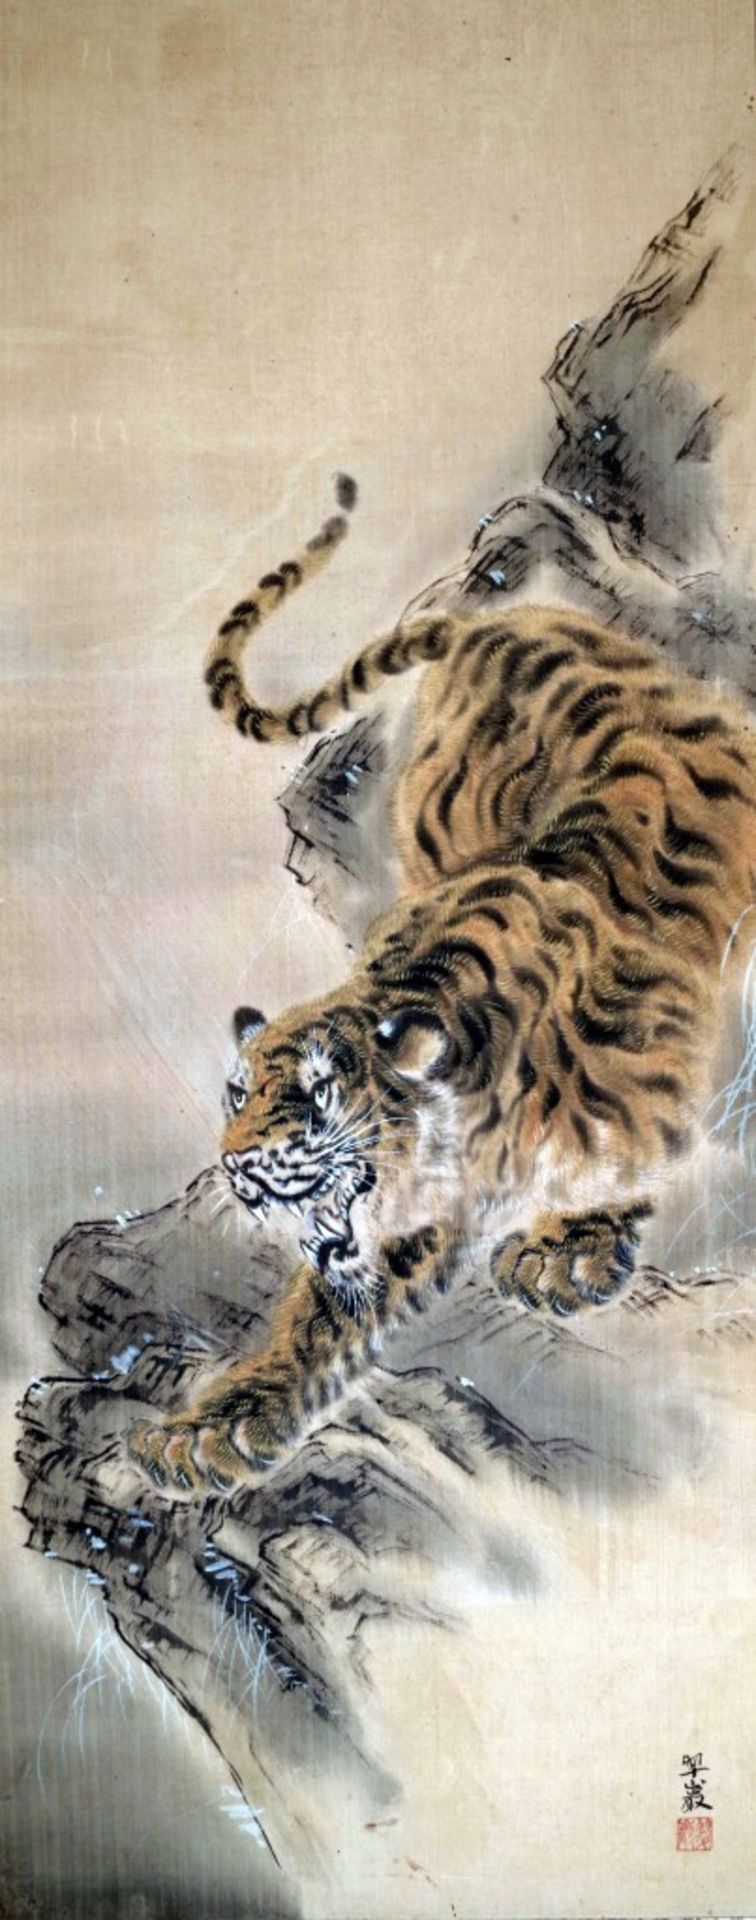 Tiger auf Ast von Suigan - Bild 2 aus 3